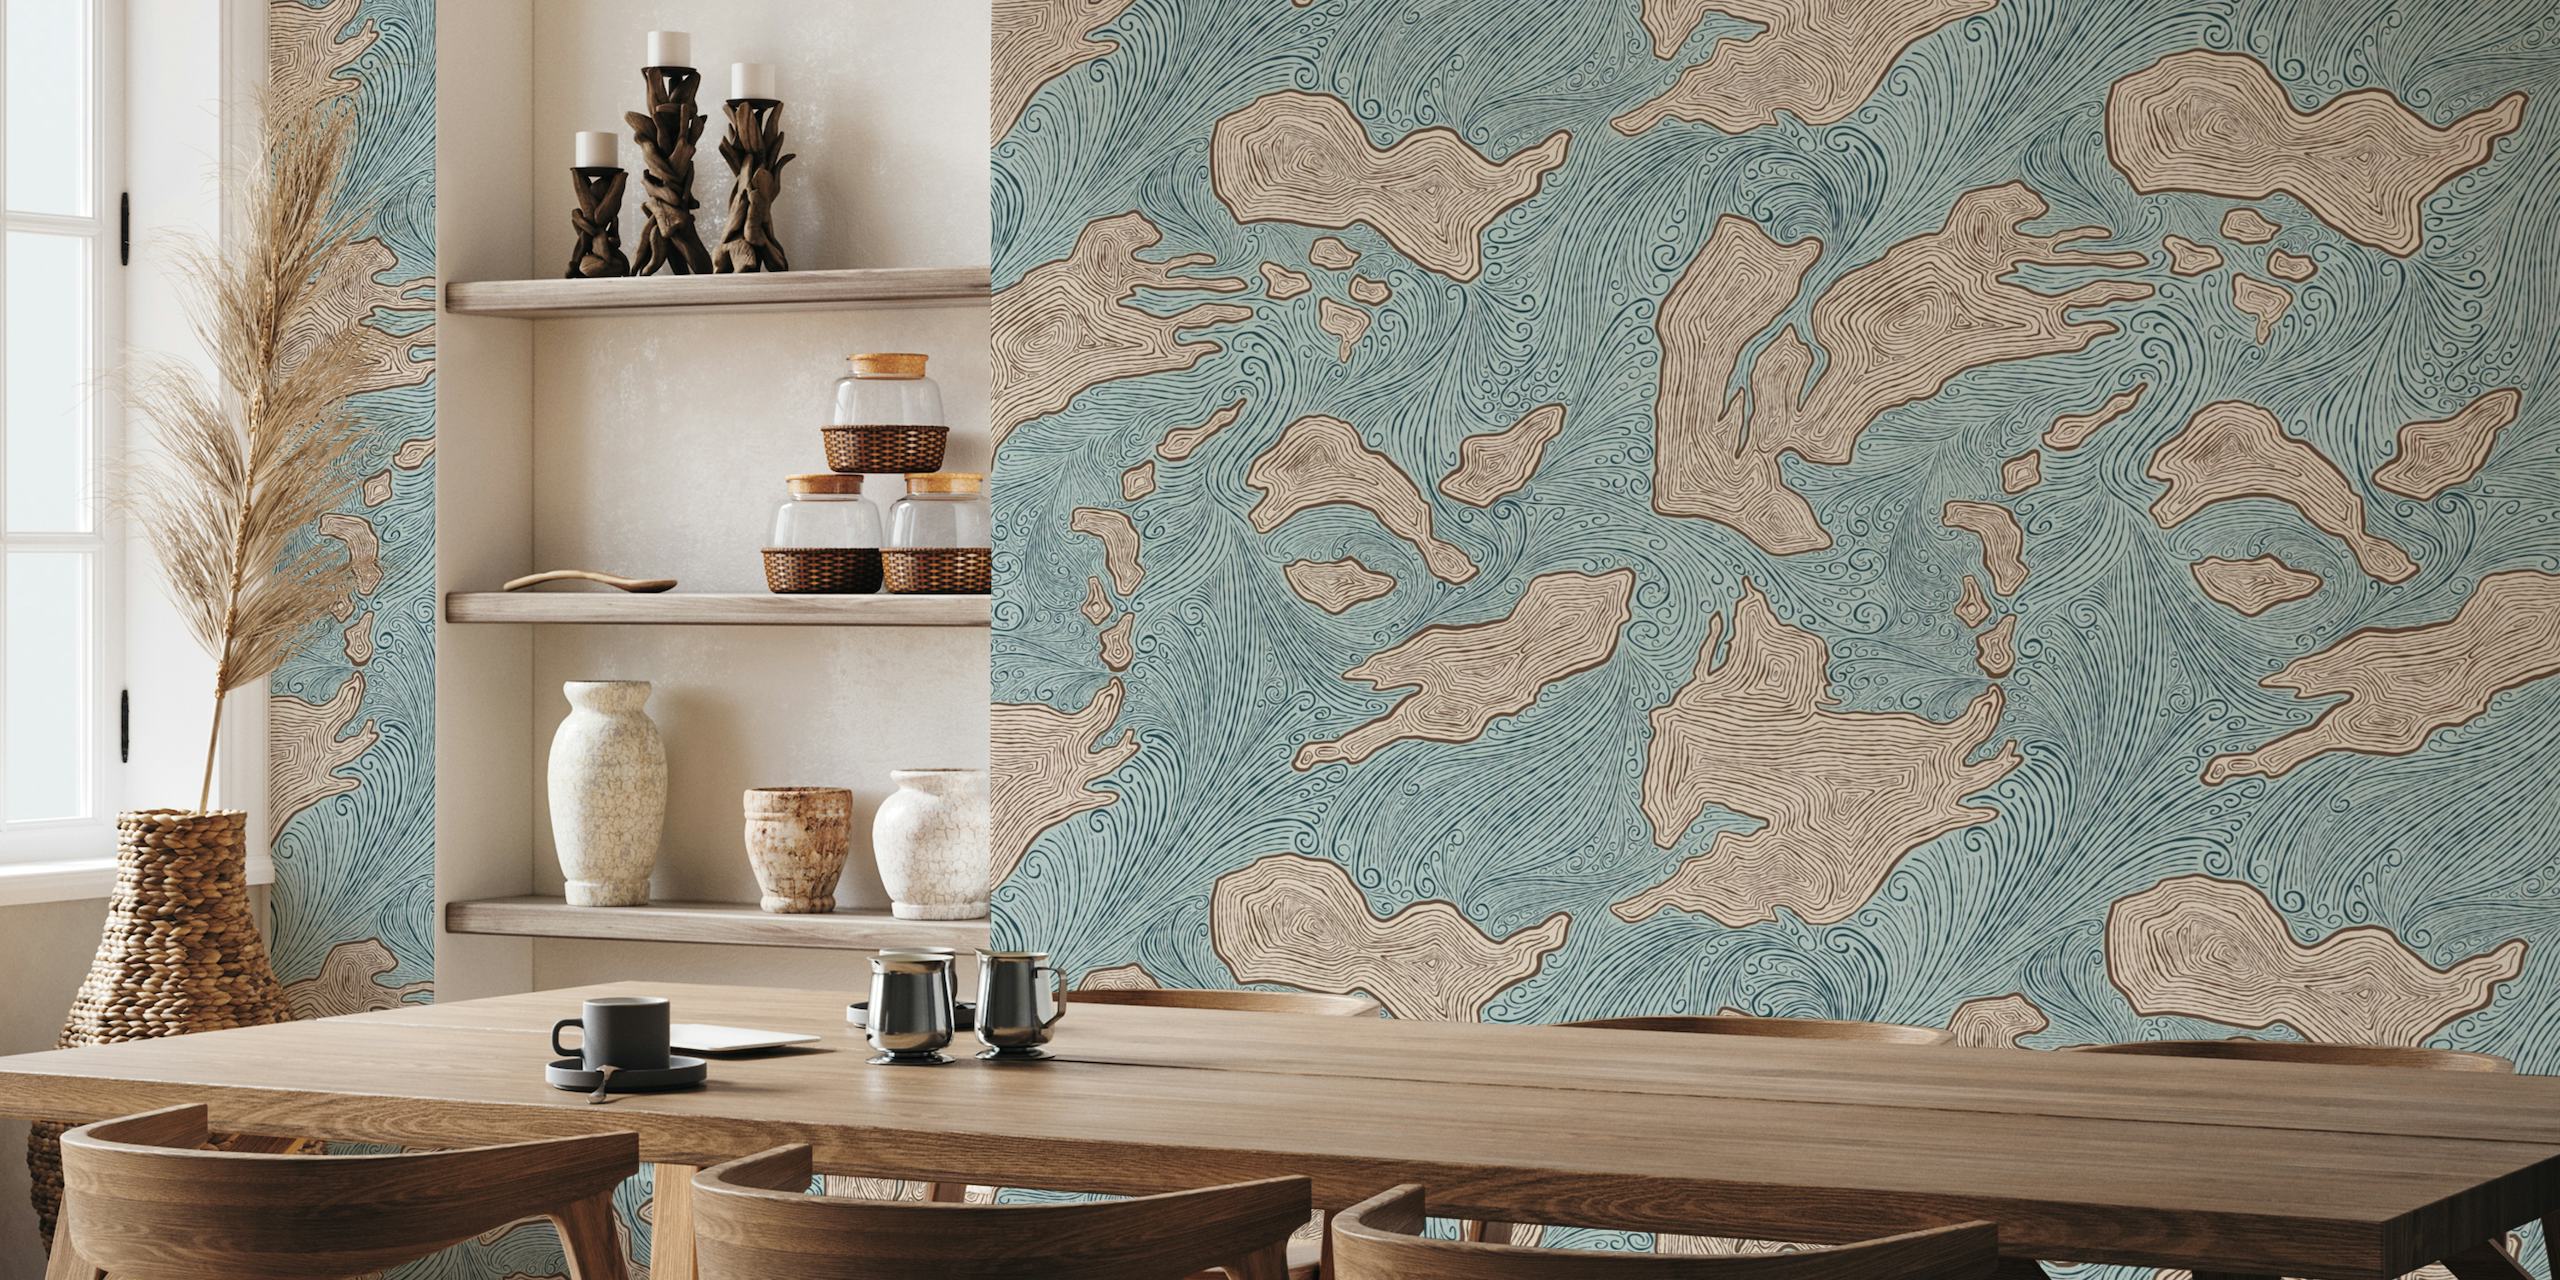 Wandbild mit abstrakten Inselformen in beruhigenden Blau- und Erdtönen mit dem Namen „Undiscovered Islands“.